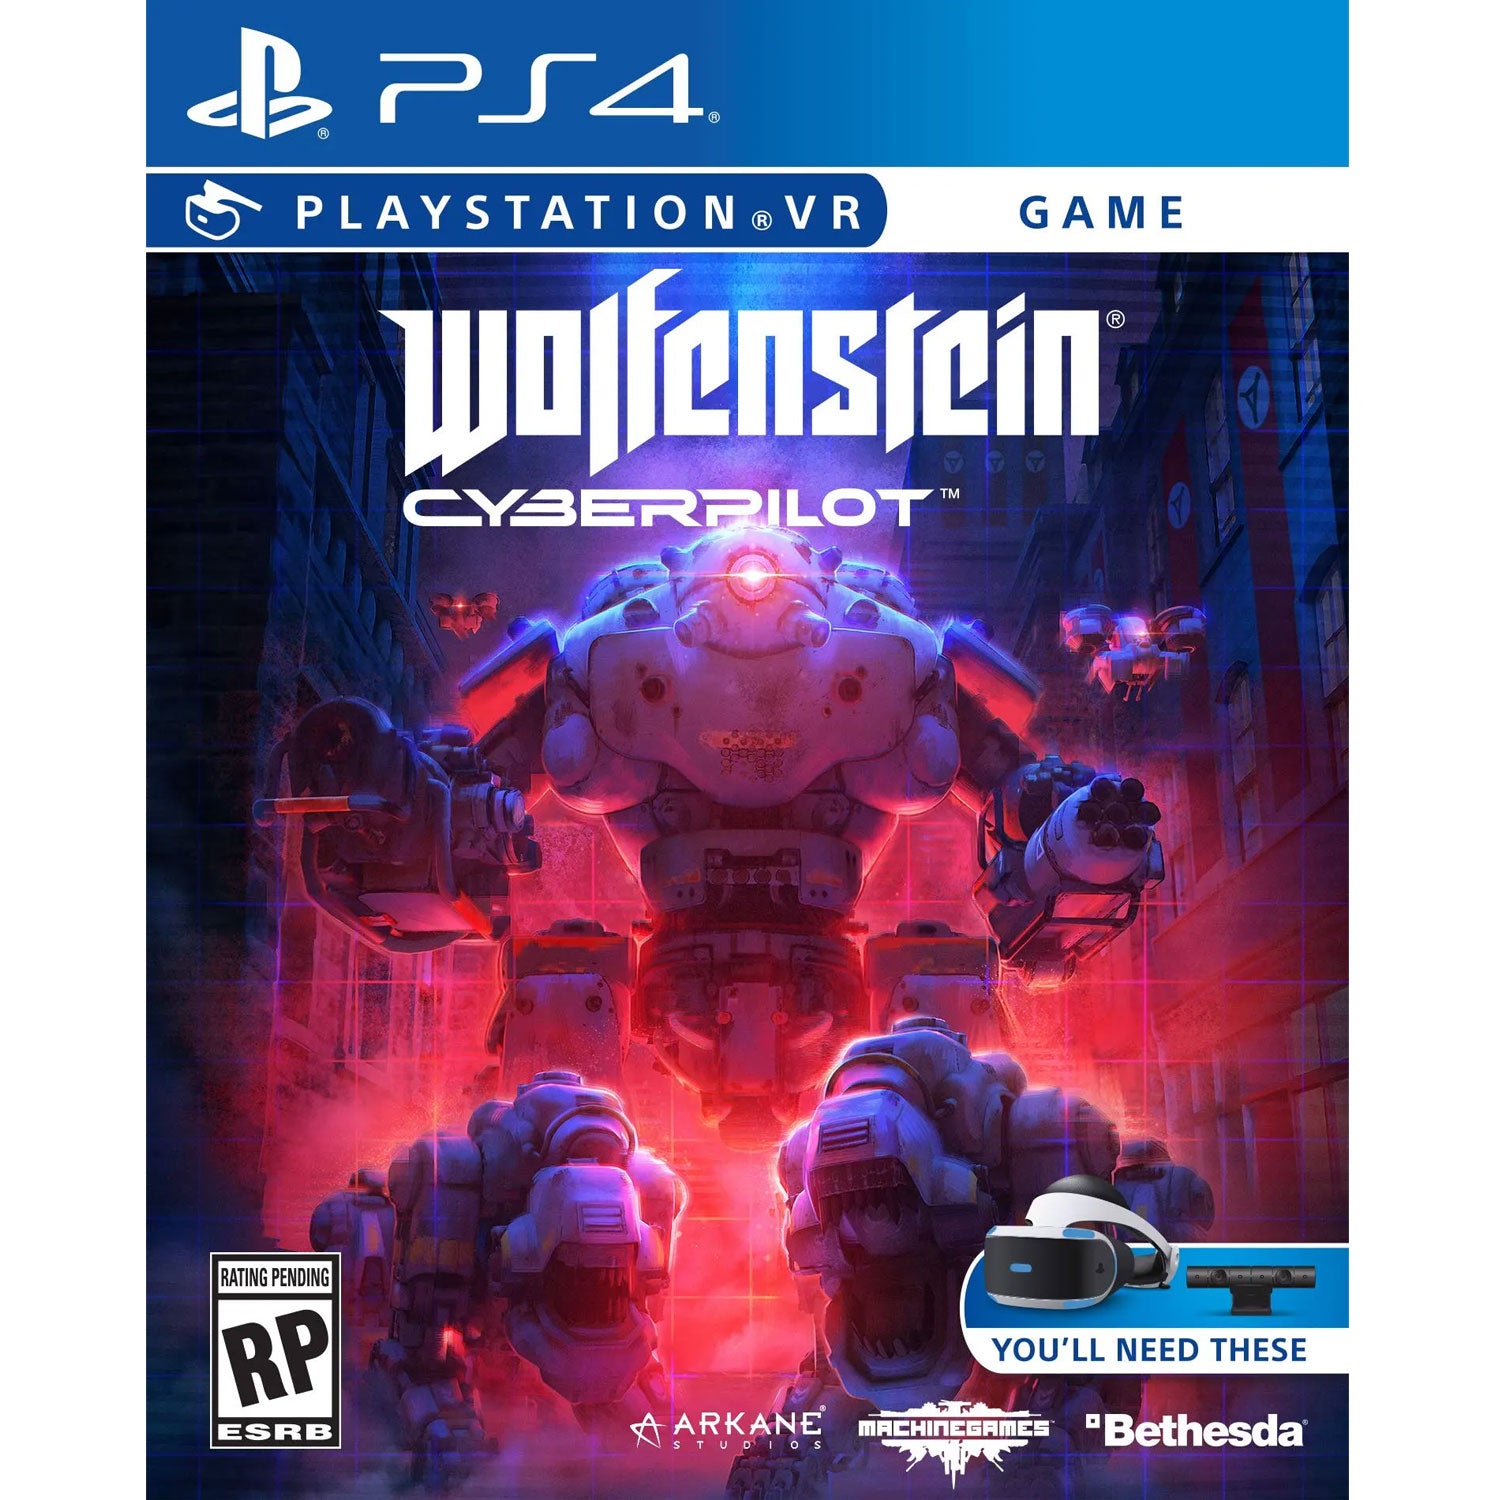 PS4 Wolfenstein: Cyberpilot